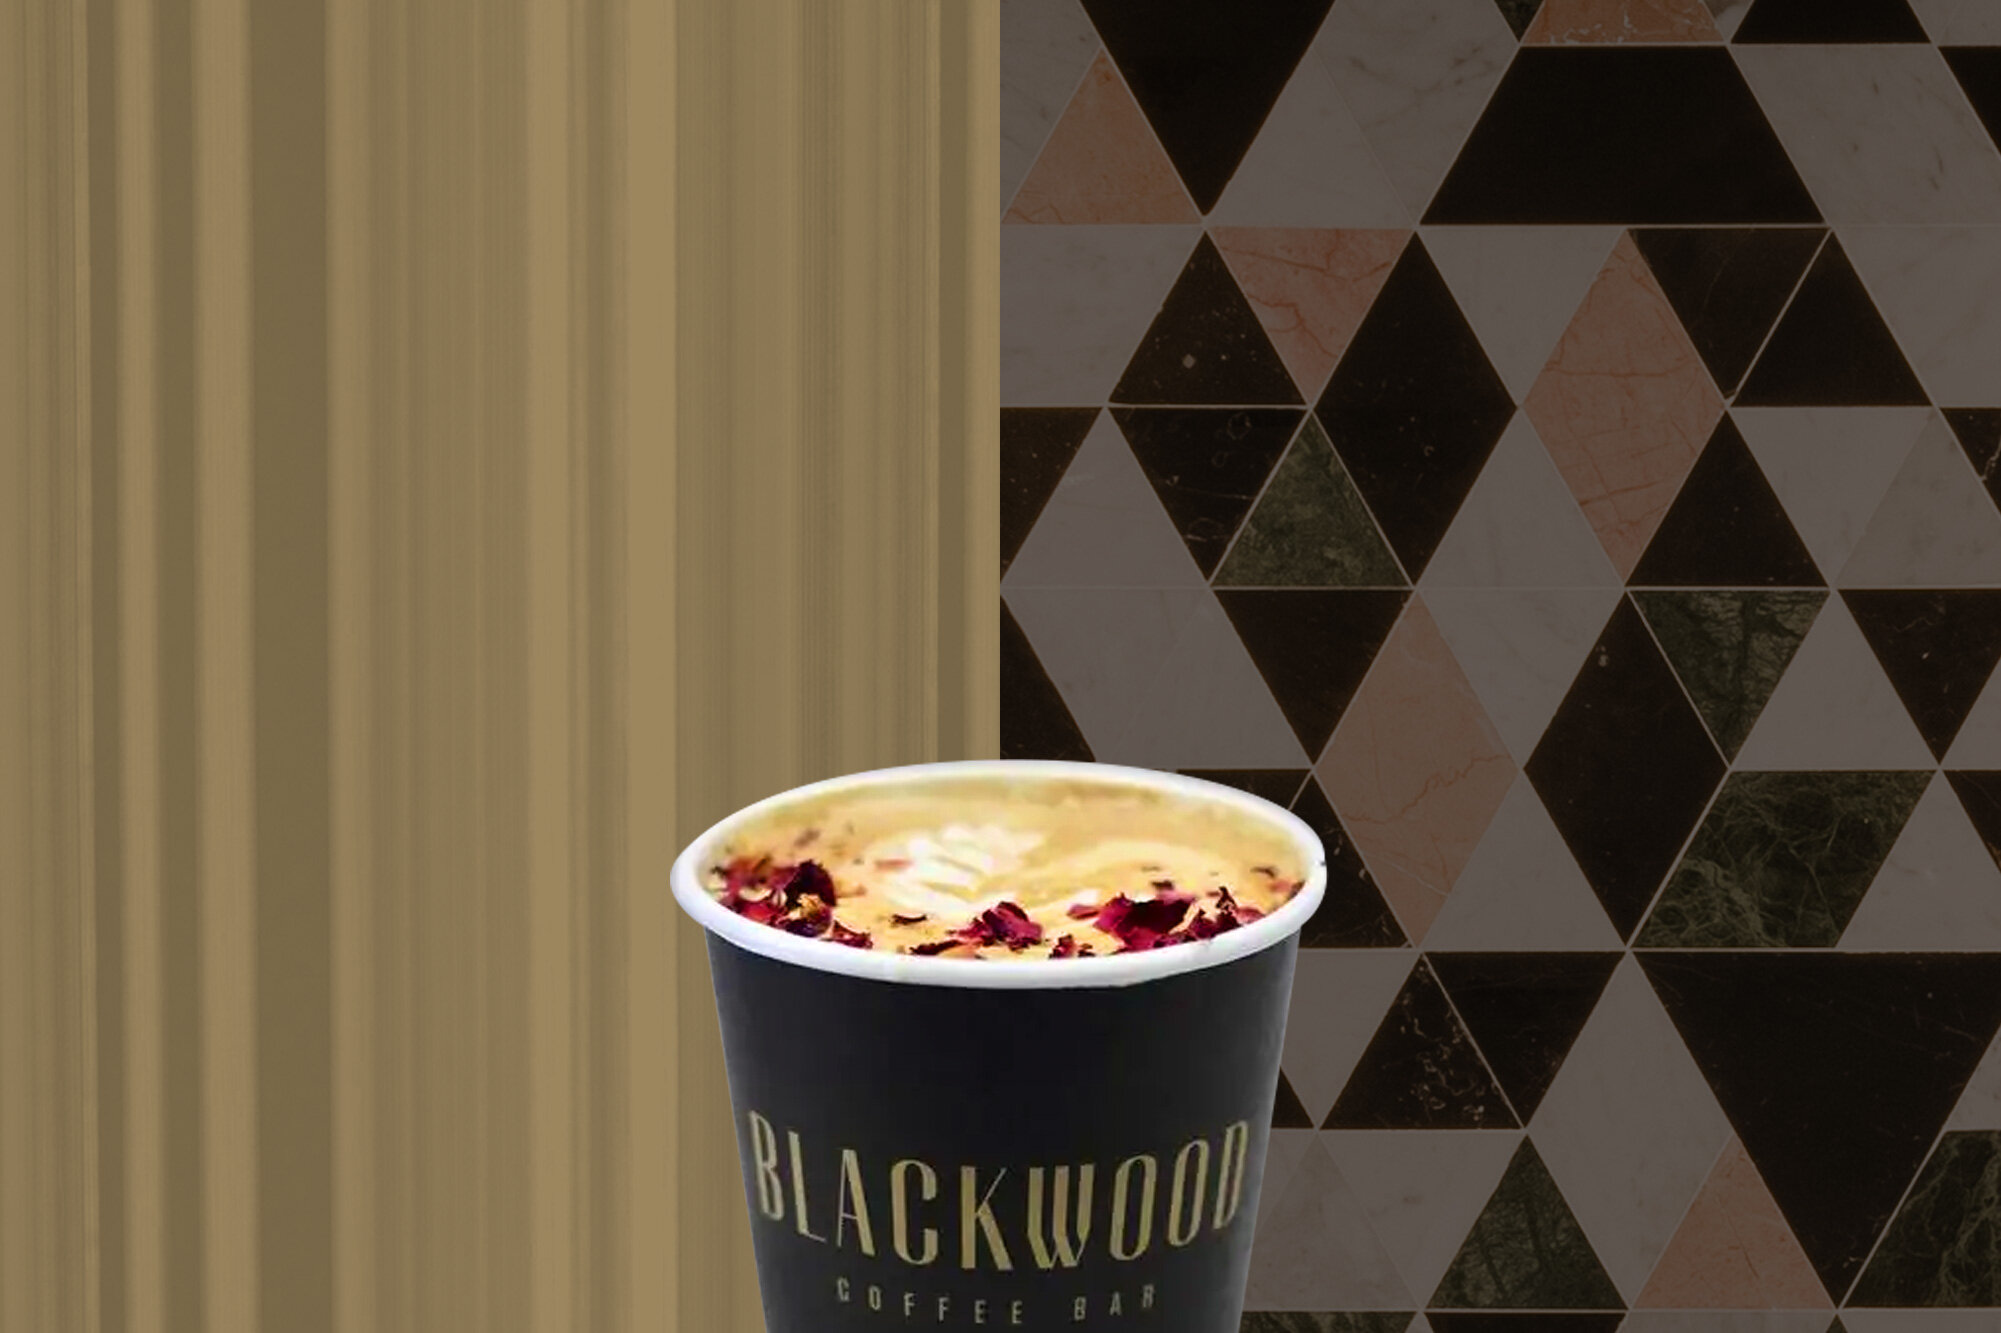 Blackwood Coffee Bar